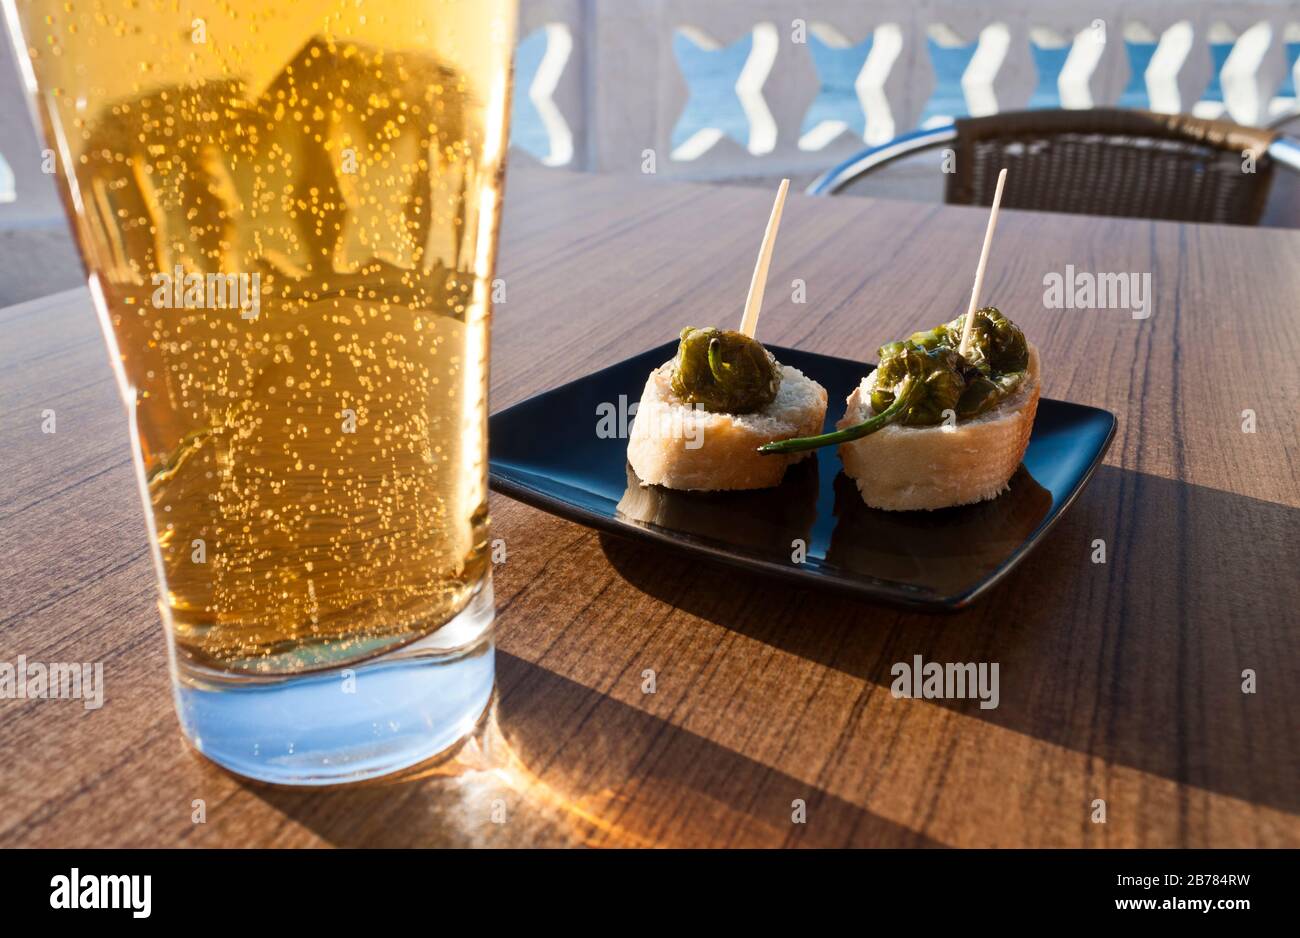 Les petits poivrons verts (Padron poivrons) avec du pain dans une assiette avec un verre de bière dans une table d'une terrasse près de la mer. Banque D'Images